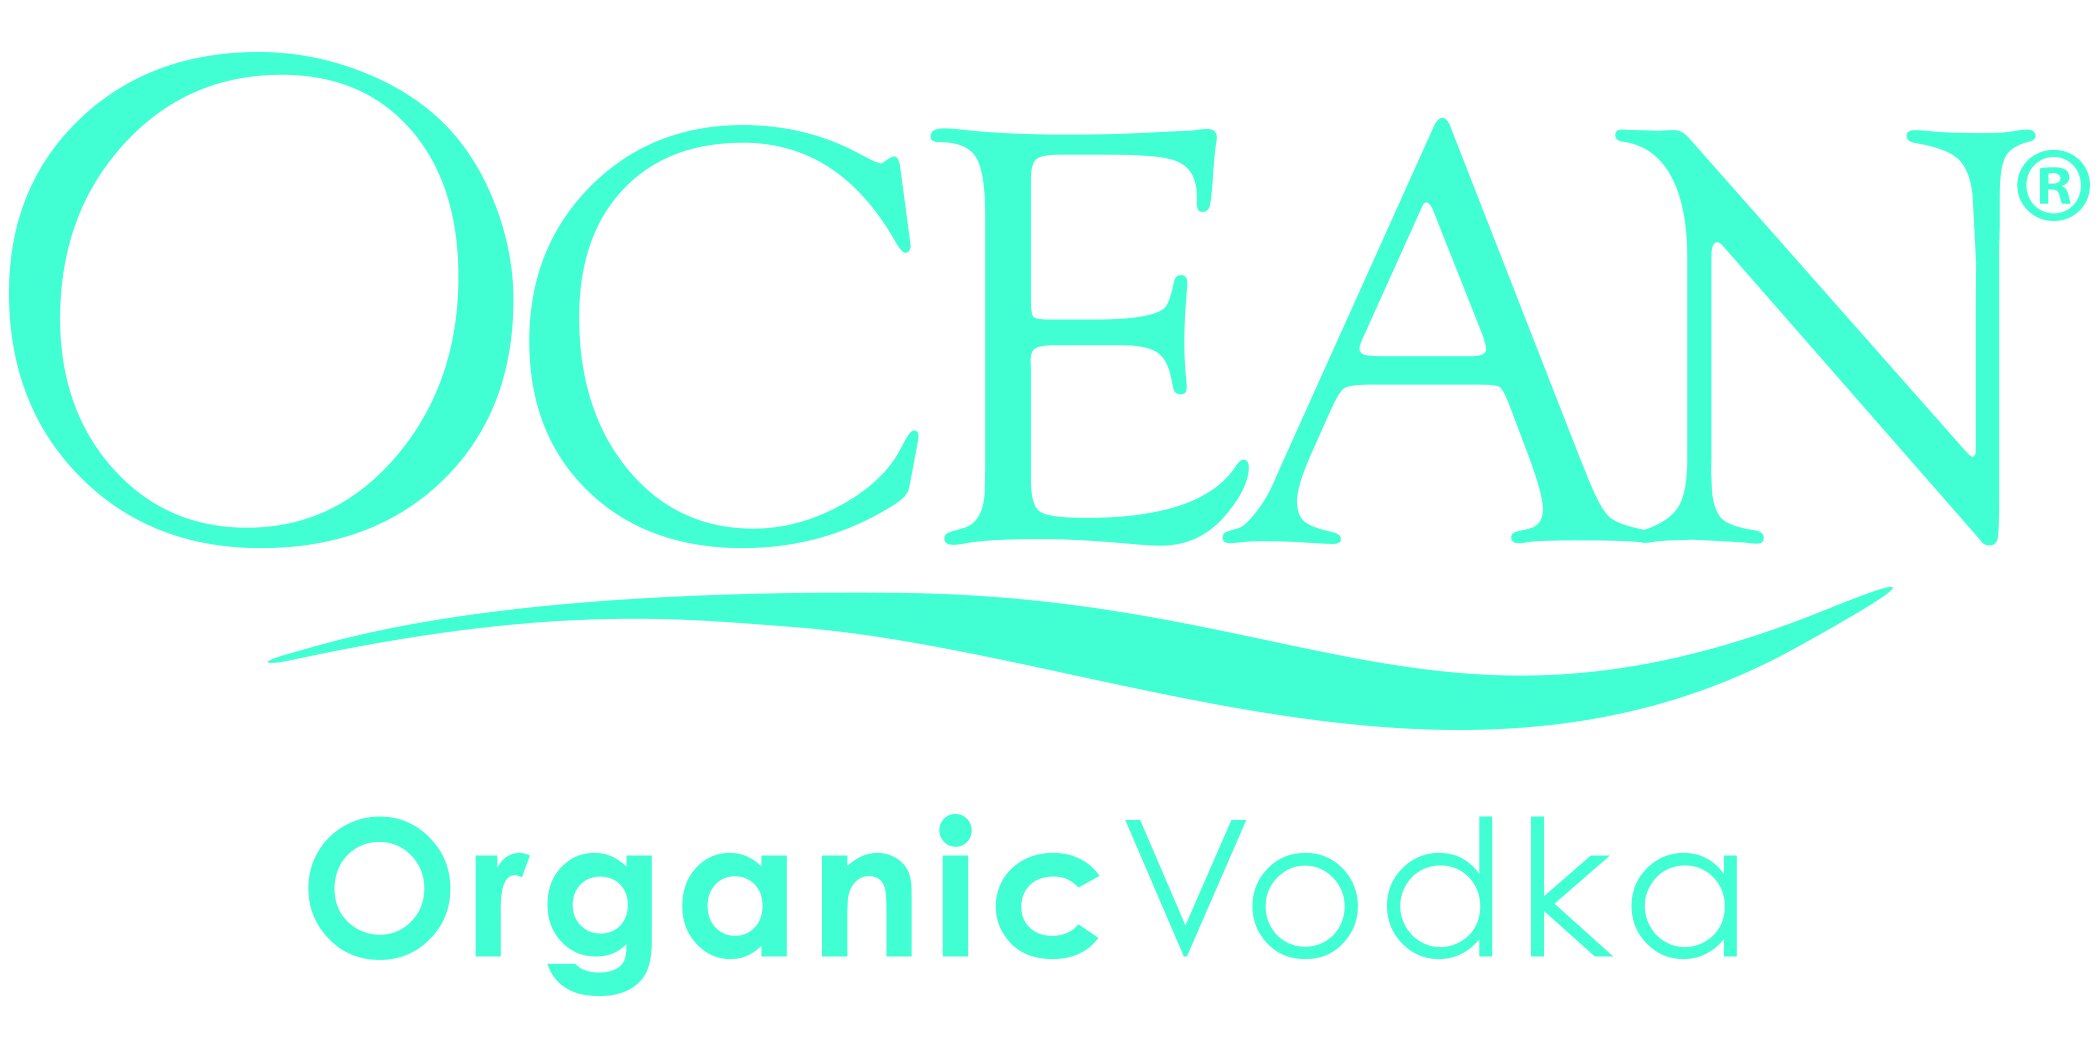 Ocean-Organic-Vodka-color-logo-hi_res.jpg